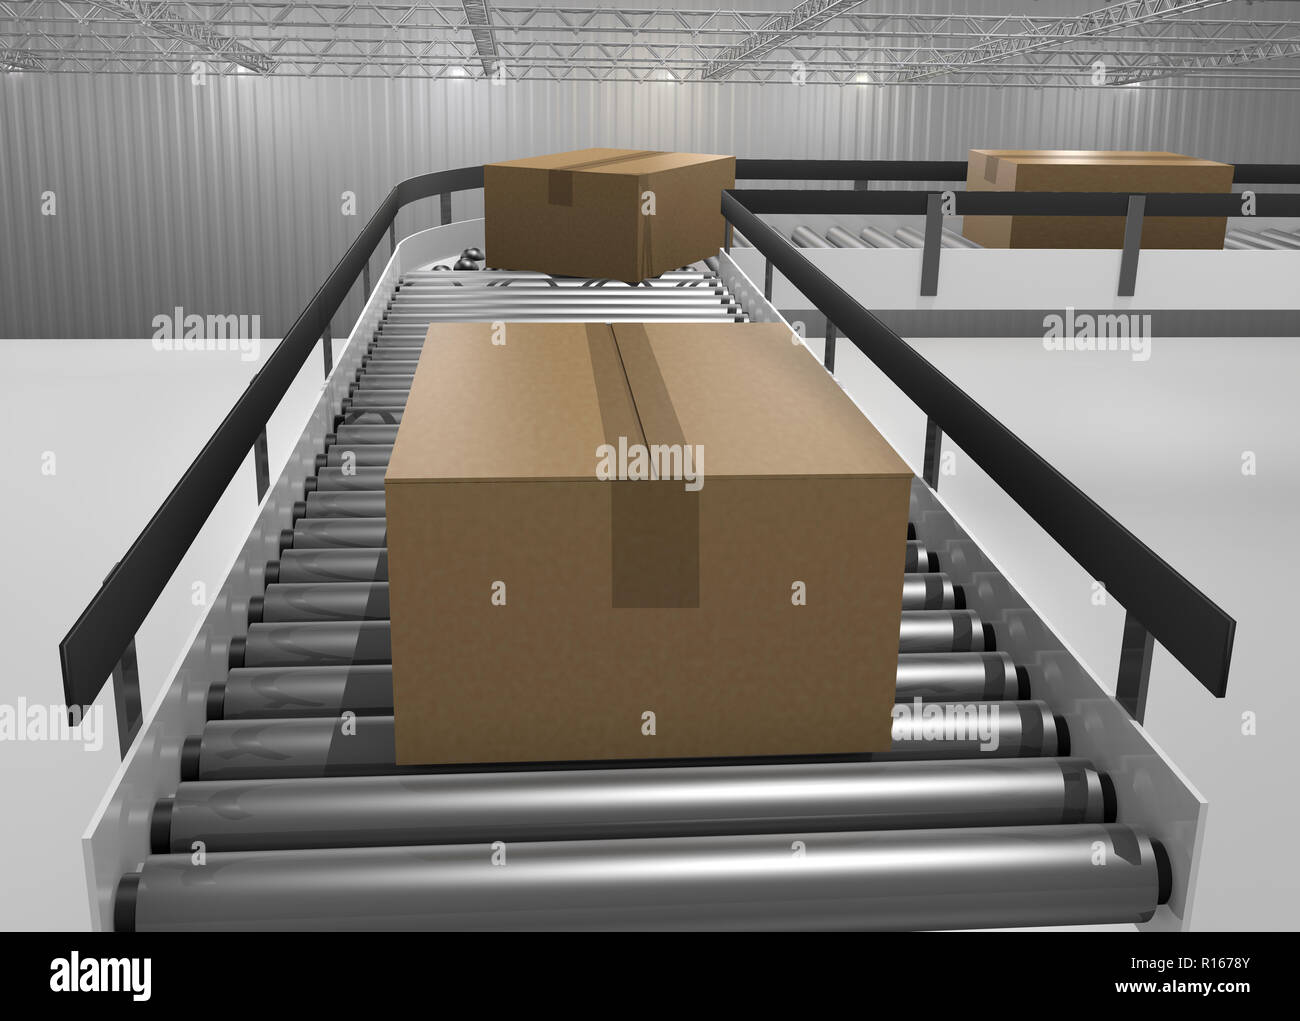 conveyor carton taxiway belts warehouse mail transport Stock Photo